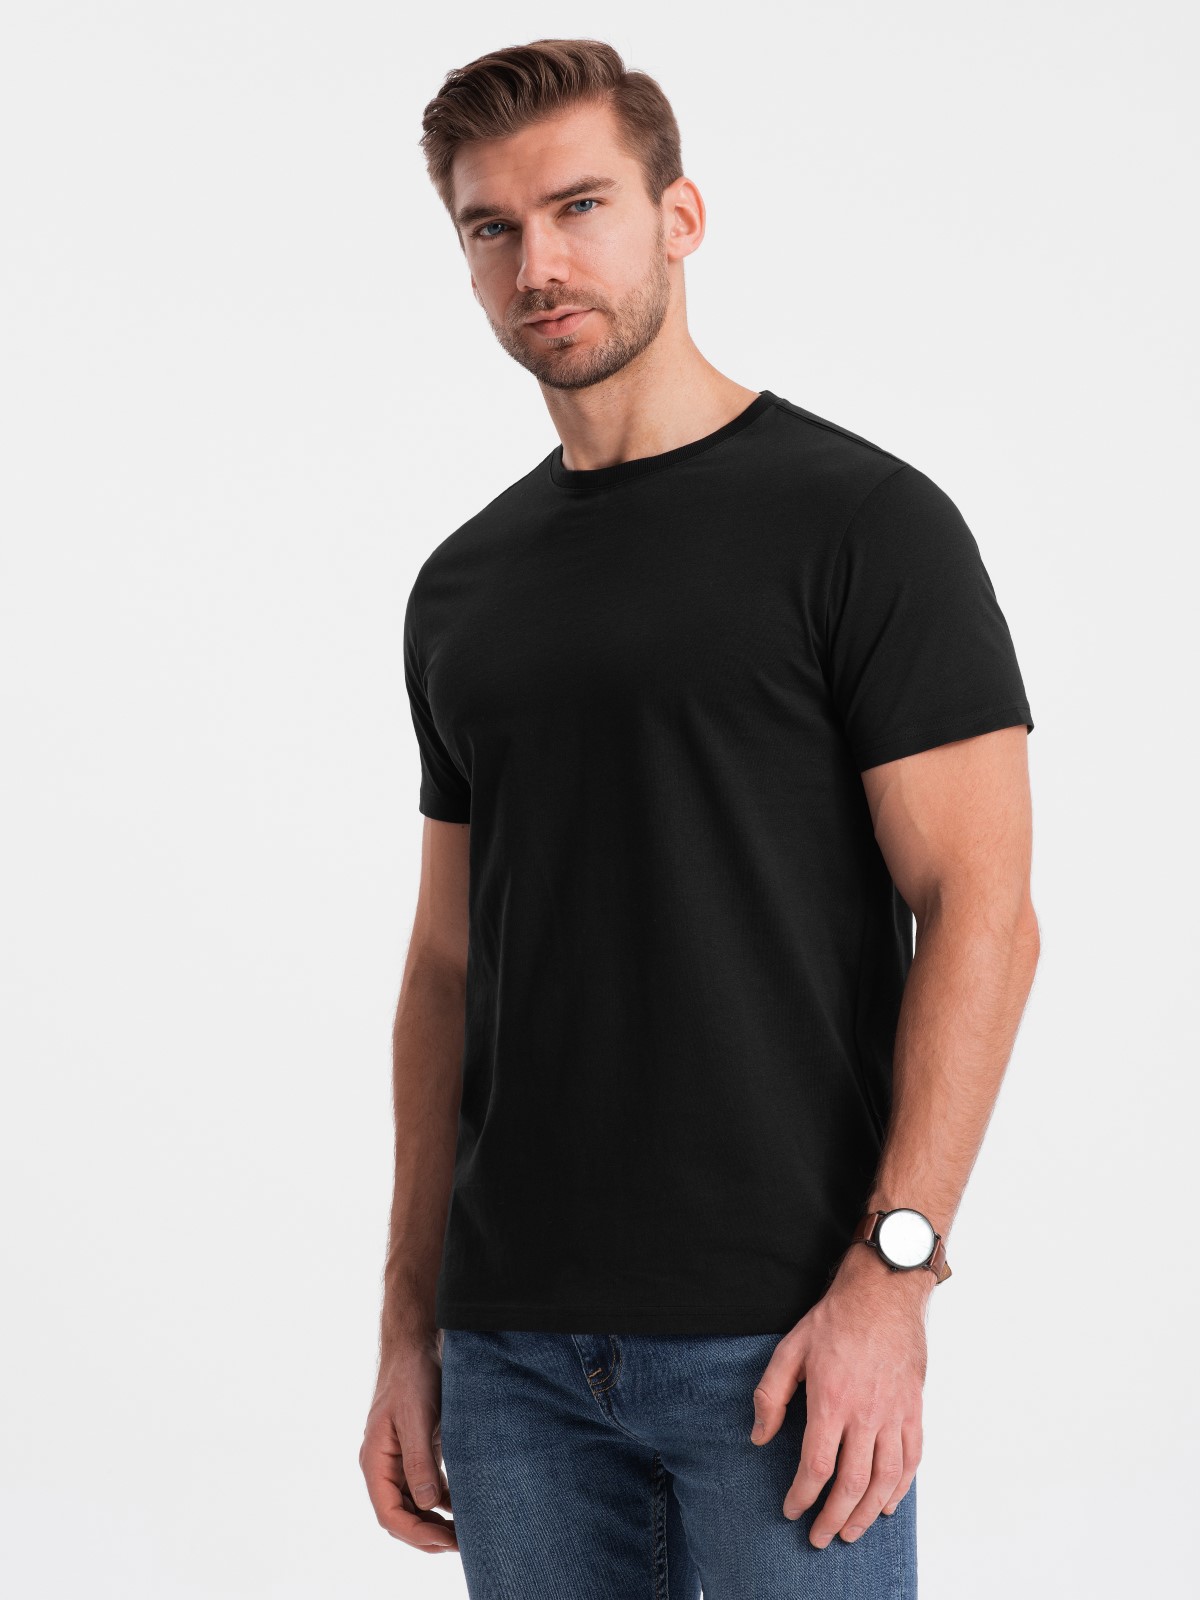 T-shirt Heren - Zwart - ASTANA